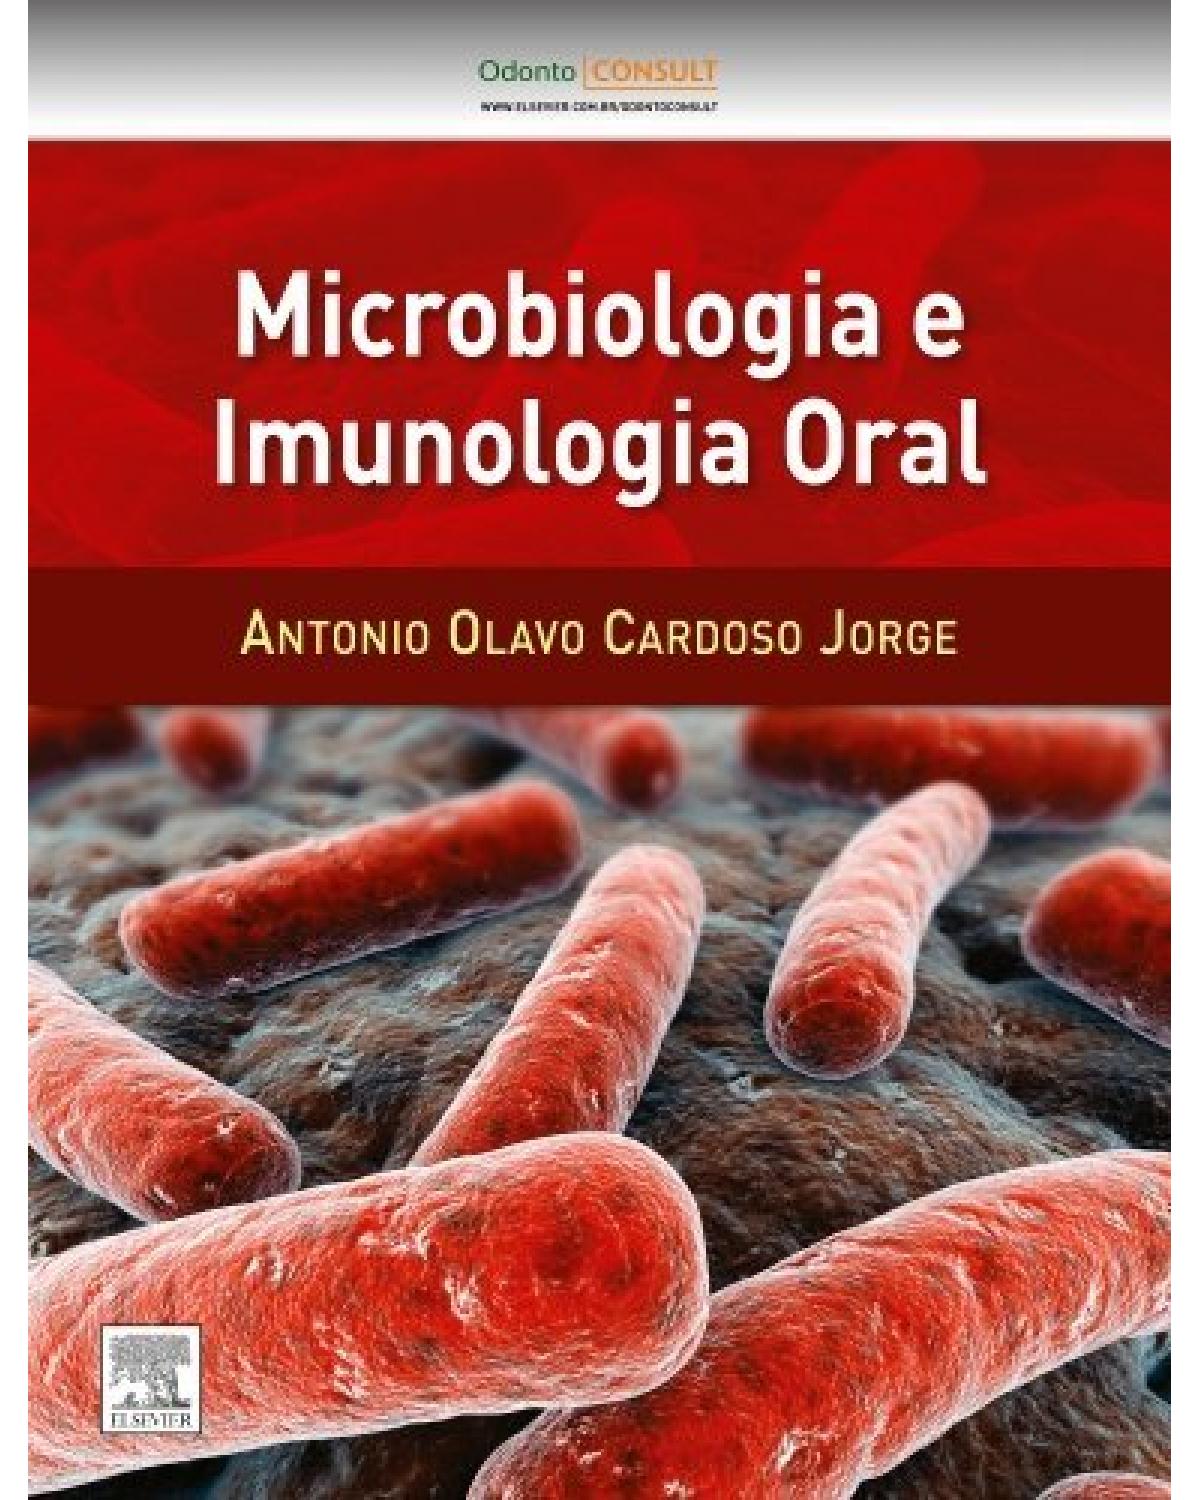 Microbiologia e imunologia oral - 1ª Edição | 2012